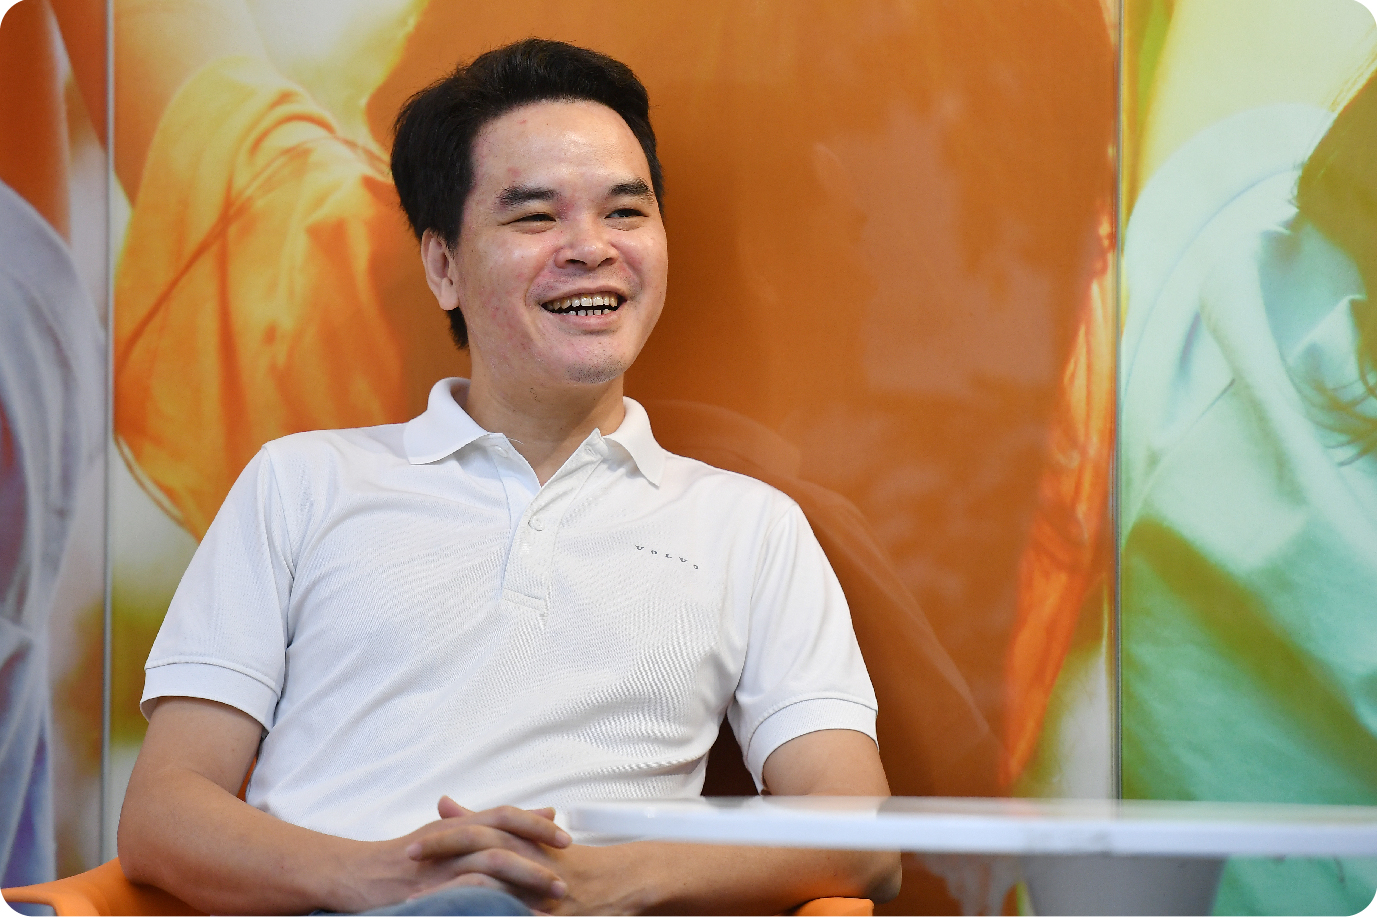 Cựu Giám đốc Digital của Viettel Telecom khởi nghiệp, lập nên Edtech dạy tiếng Anh số 1 Việt Nam: Tìm thấy cơ hội khi về quê, mơ thành ‘cận kỳ lân’ năm 2025 - Ảnh 1.